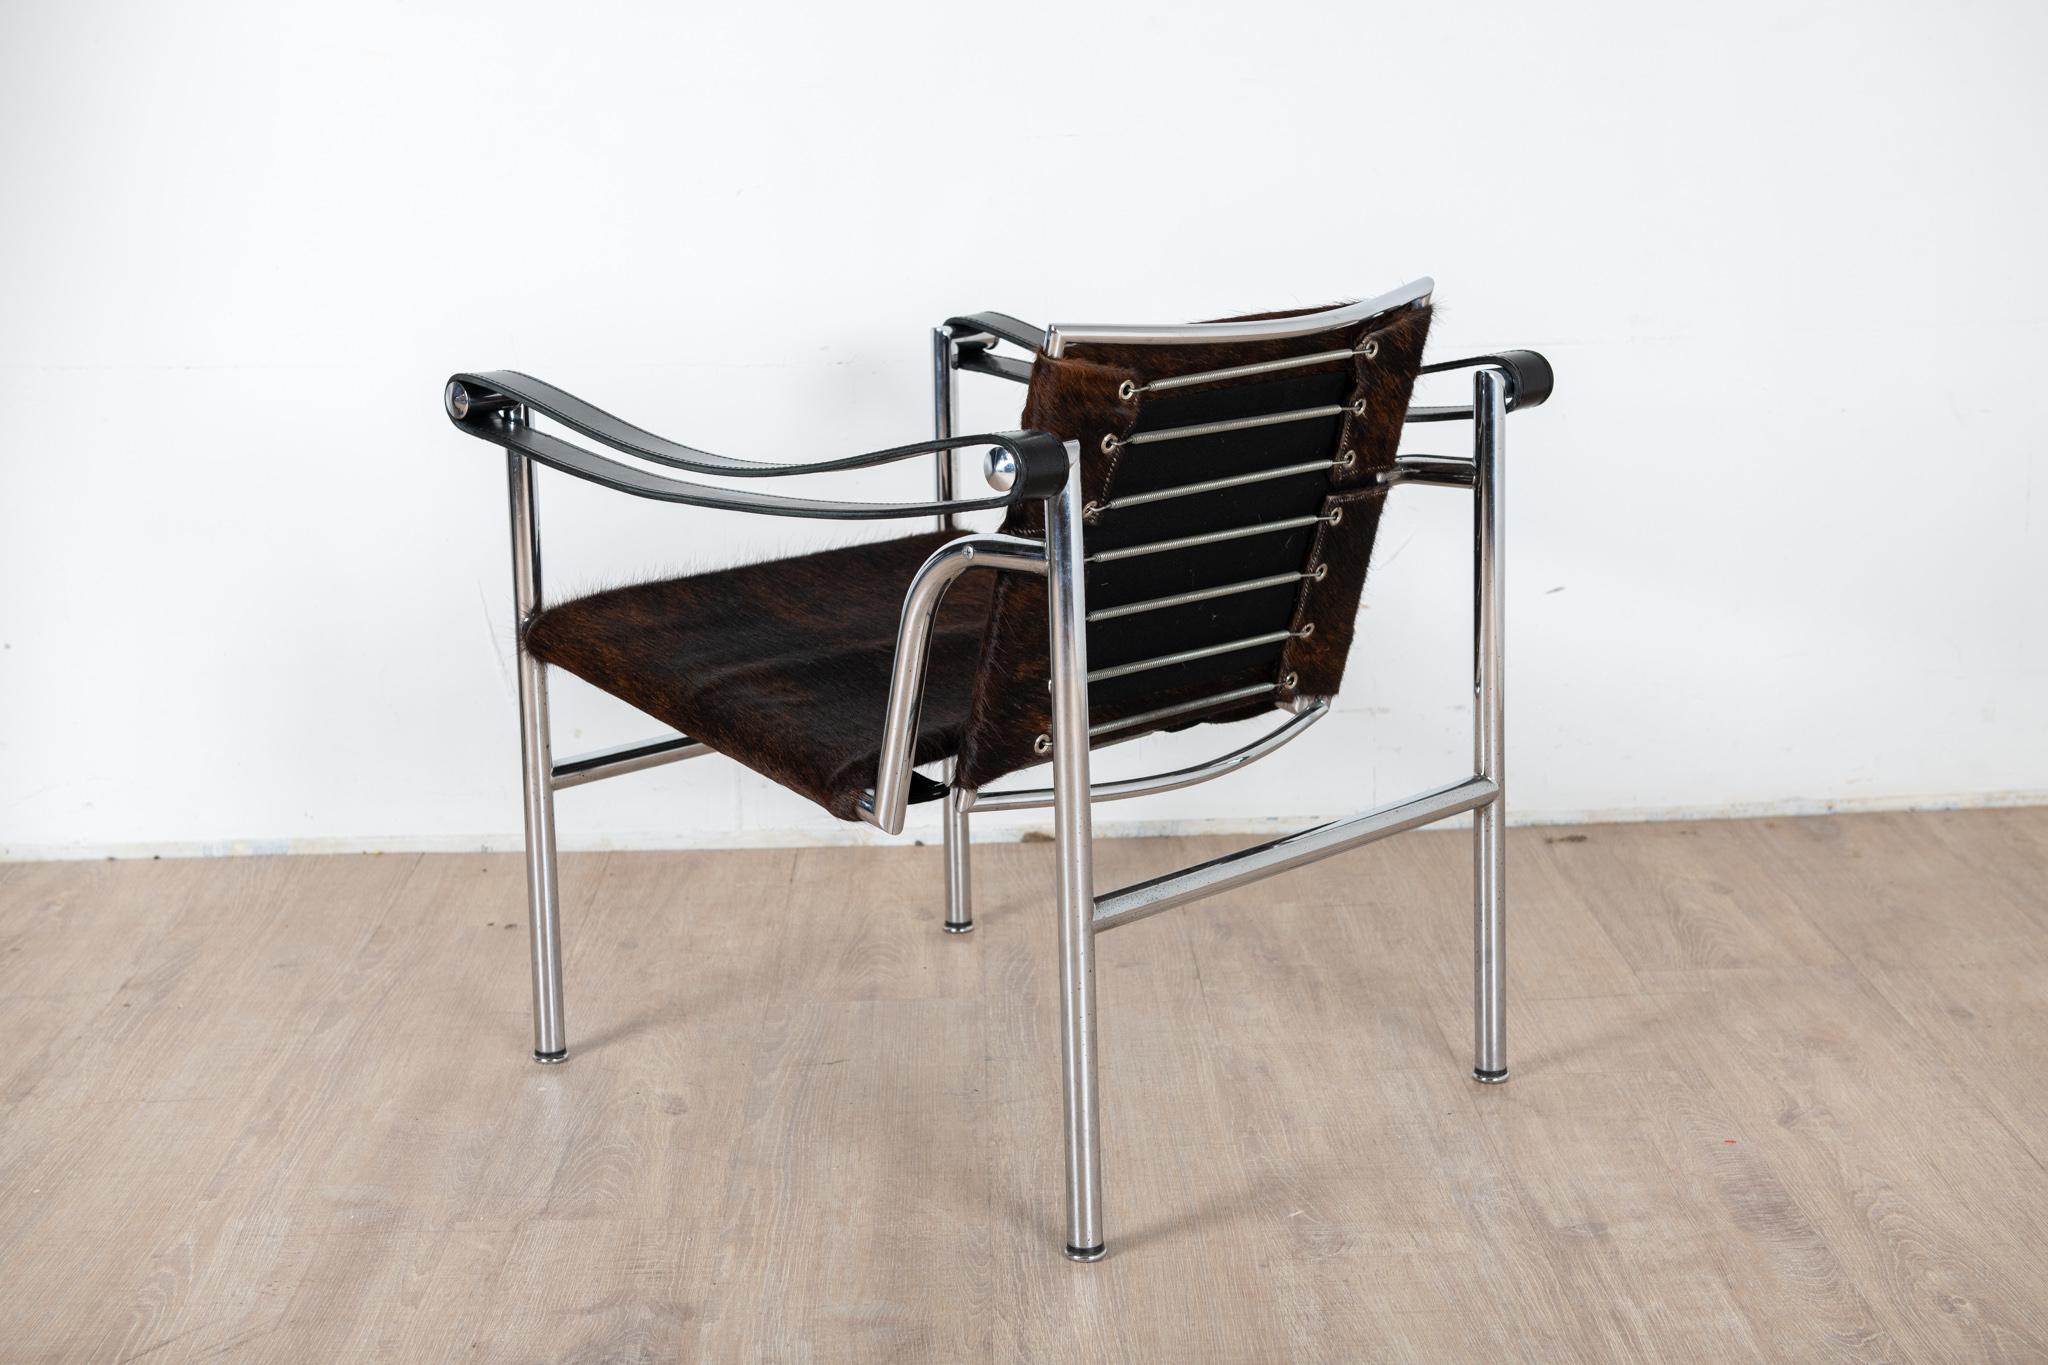 Paire de fauteuil basculant LC1 design de Charlotte Perriand, Le Corbusier, Pierre Jeanneret en 1928 éditions Cassina des années 70. Sur la traverse arrière des fauteuils sont present le logo Cassina, les numéros de série 29360, 29570 et signature